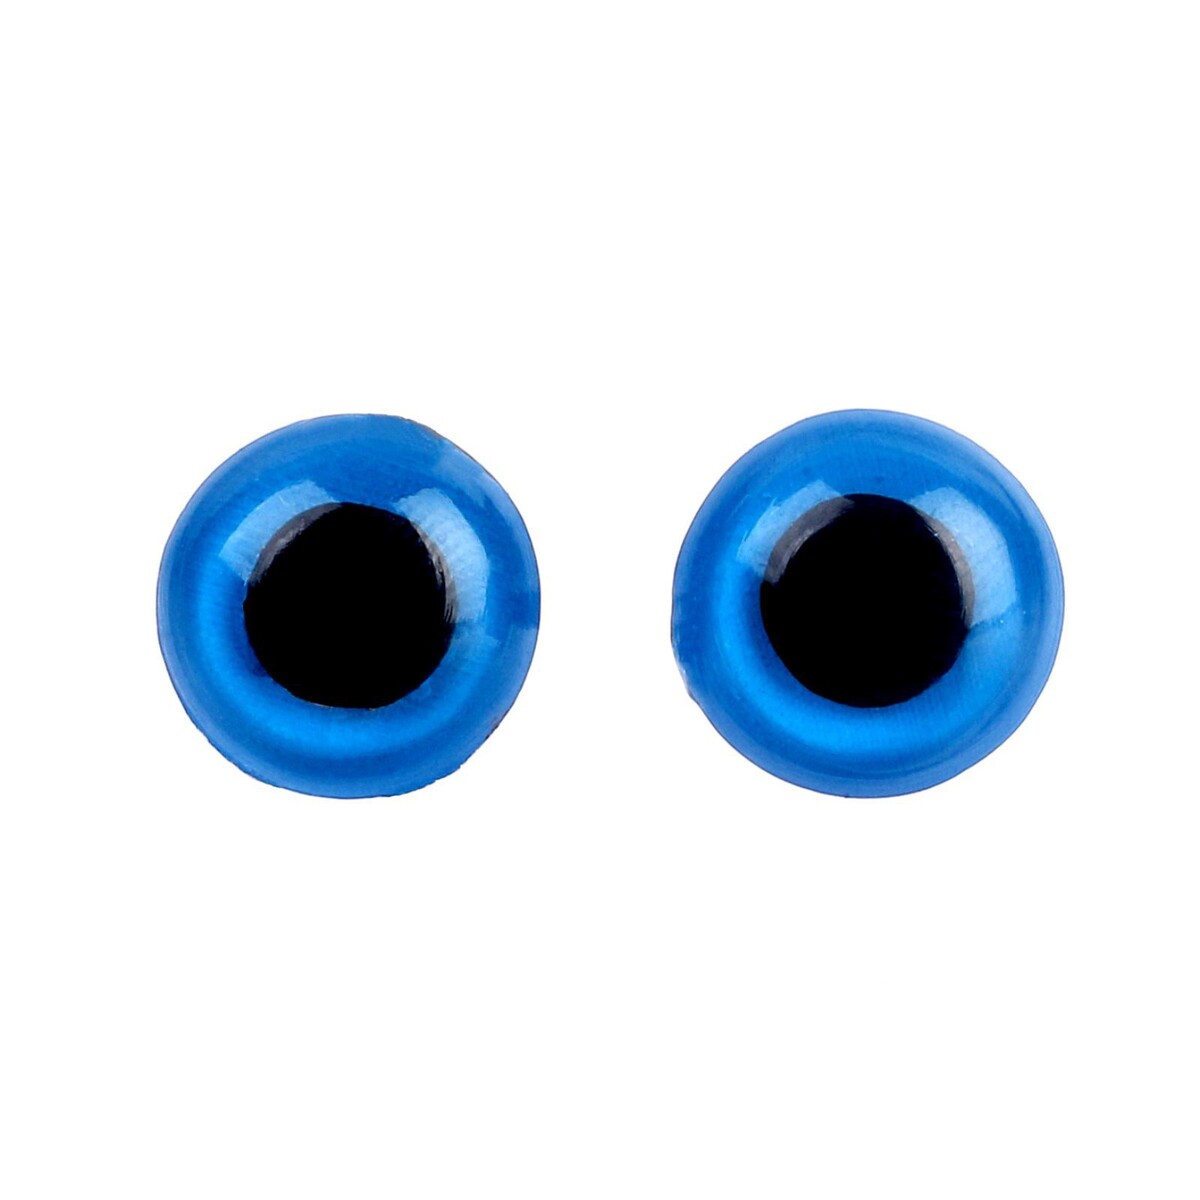 Глаза винтовые с заглушками, полупрозрачные, набор 4 шт, цвет голубой, размер 1 шт: 1×1 см глазки для кукол винтовые с заглушками полупрозрачные набор 4 шт голубой размер 1 шт 2×2 см